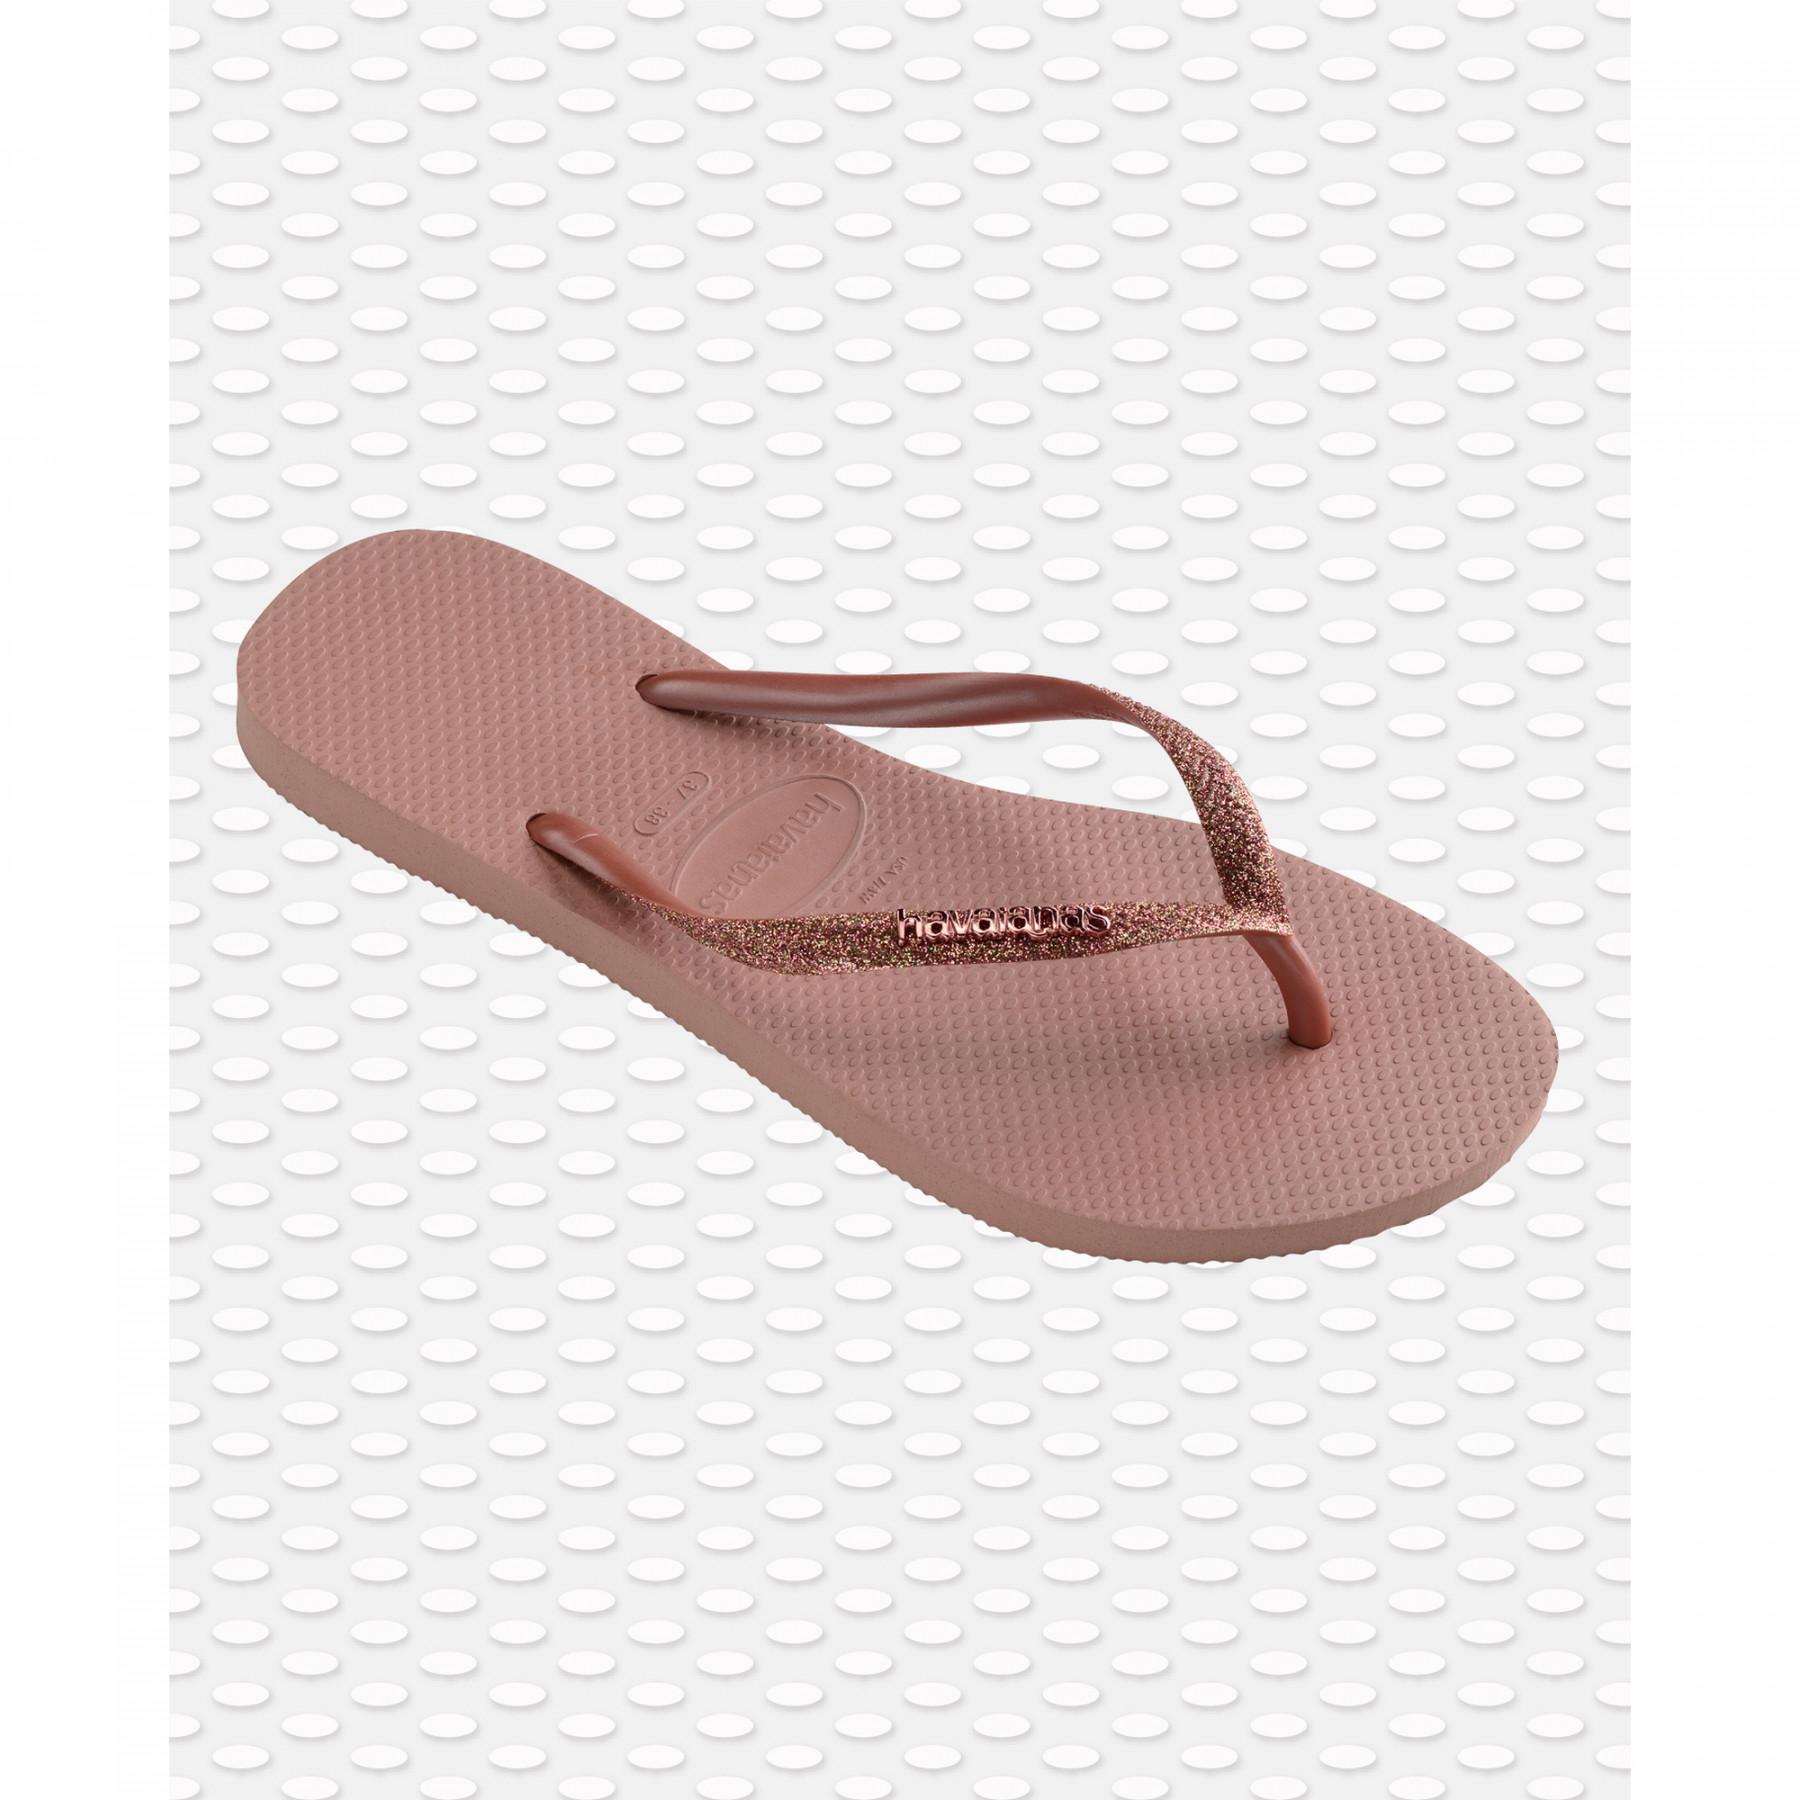 Women's flip-flops Havaianas Slim Glitter II